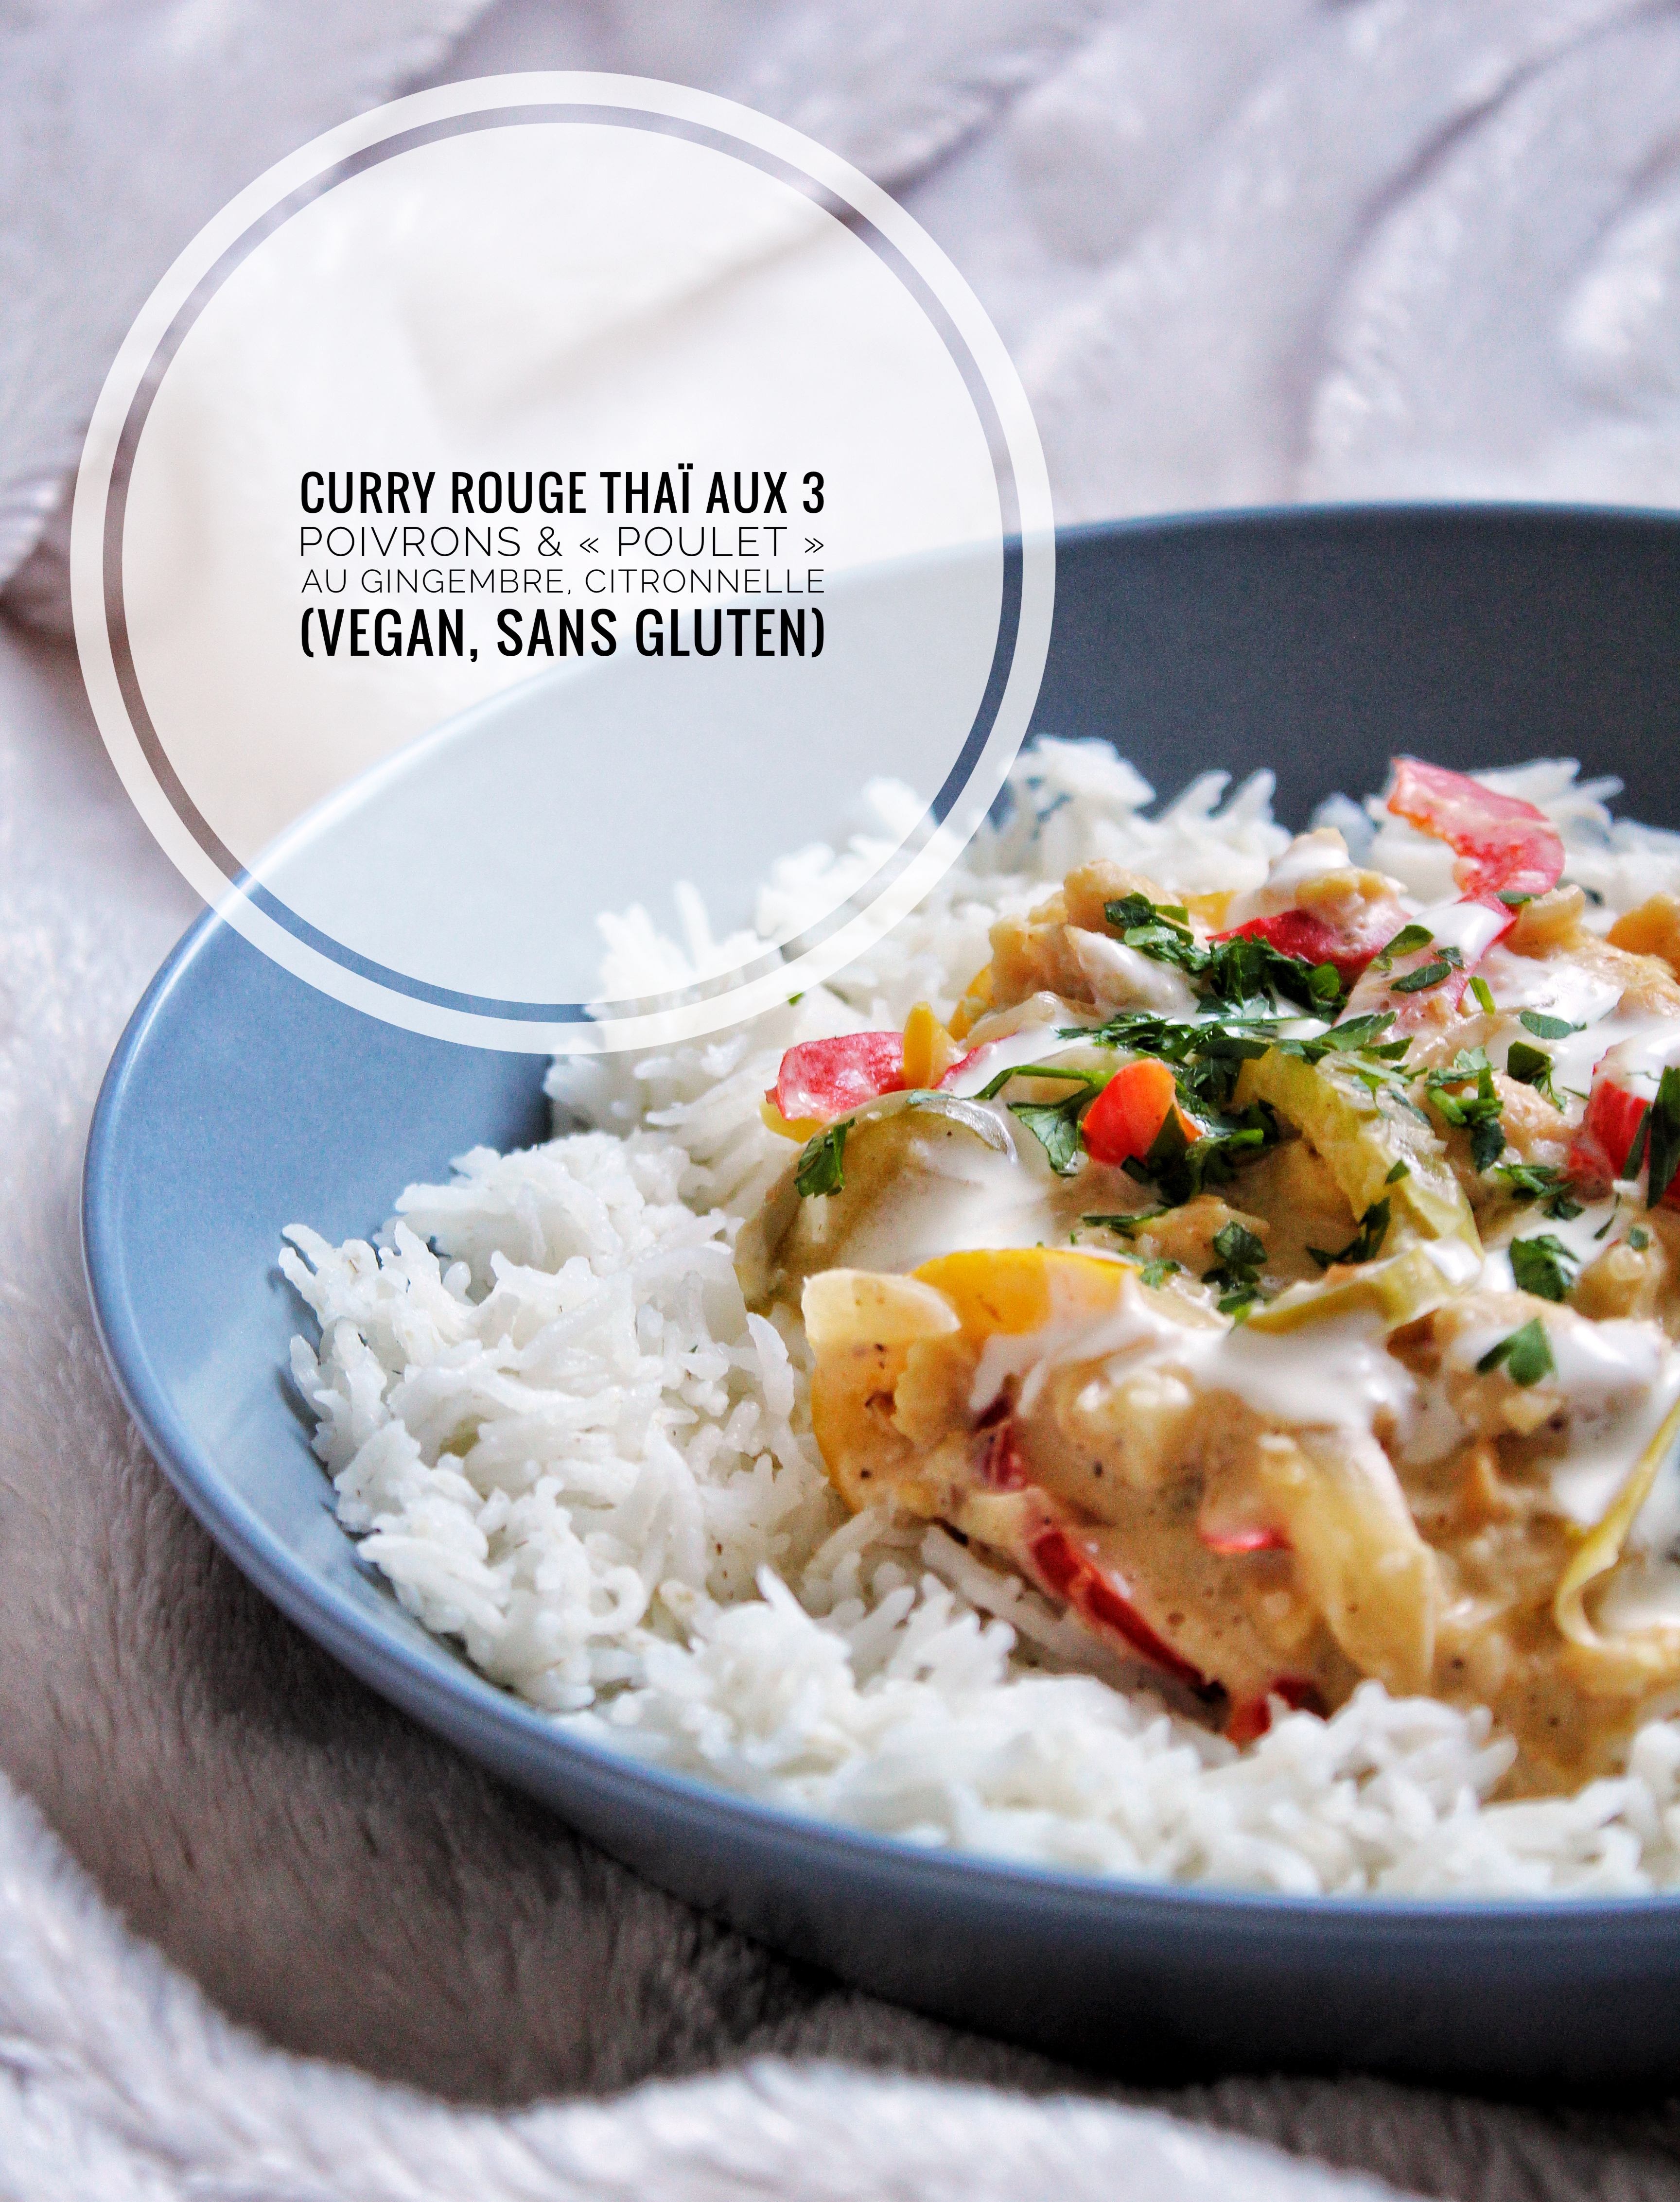 Curry rouge thaï poivrons poulet gingembre citronnelle pst vegan sans gluten sans lactose sans viande